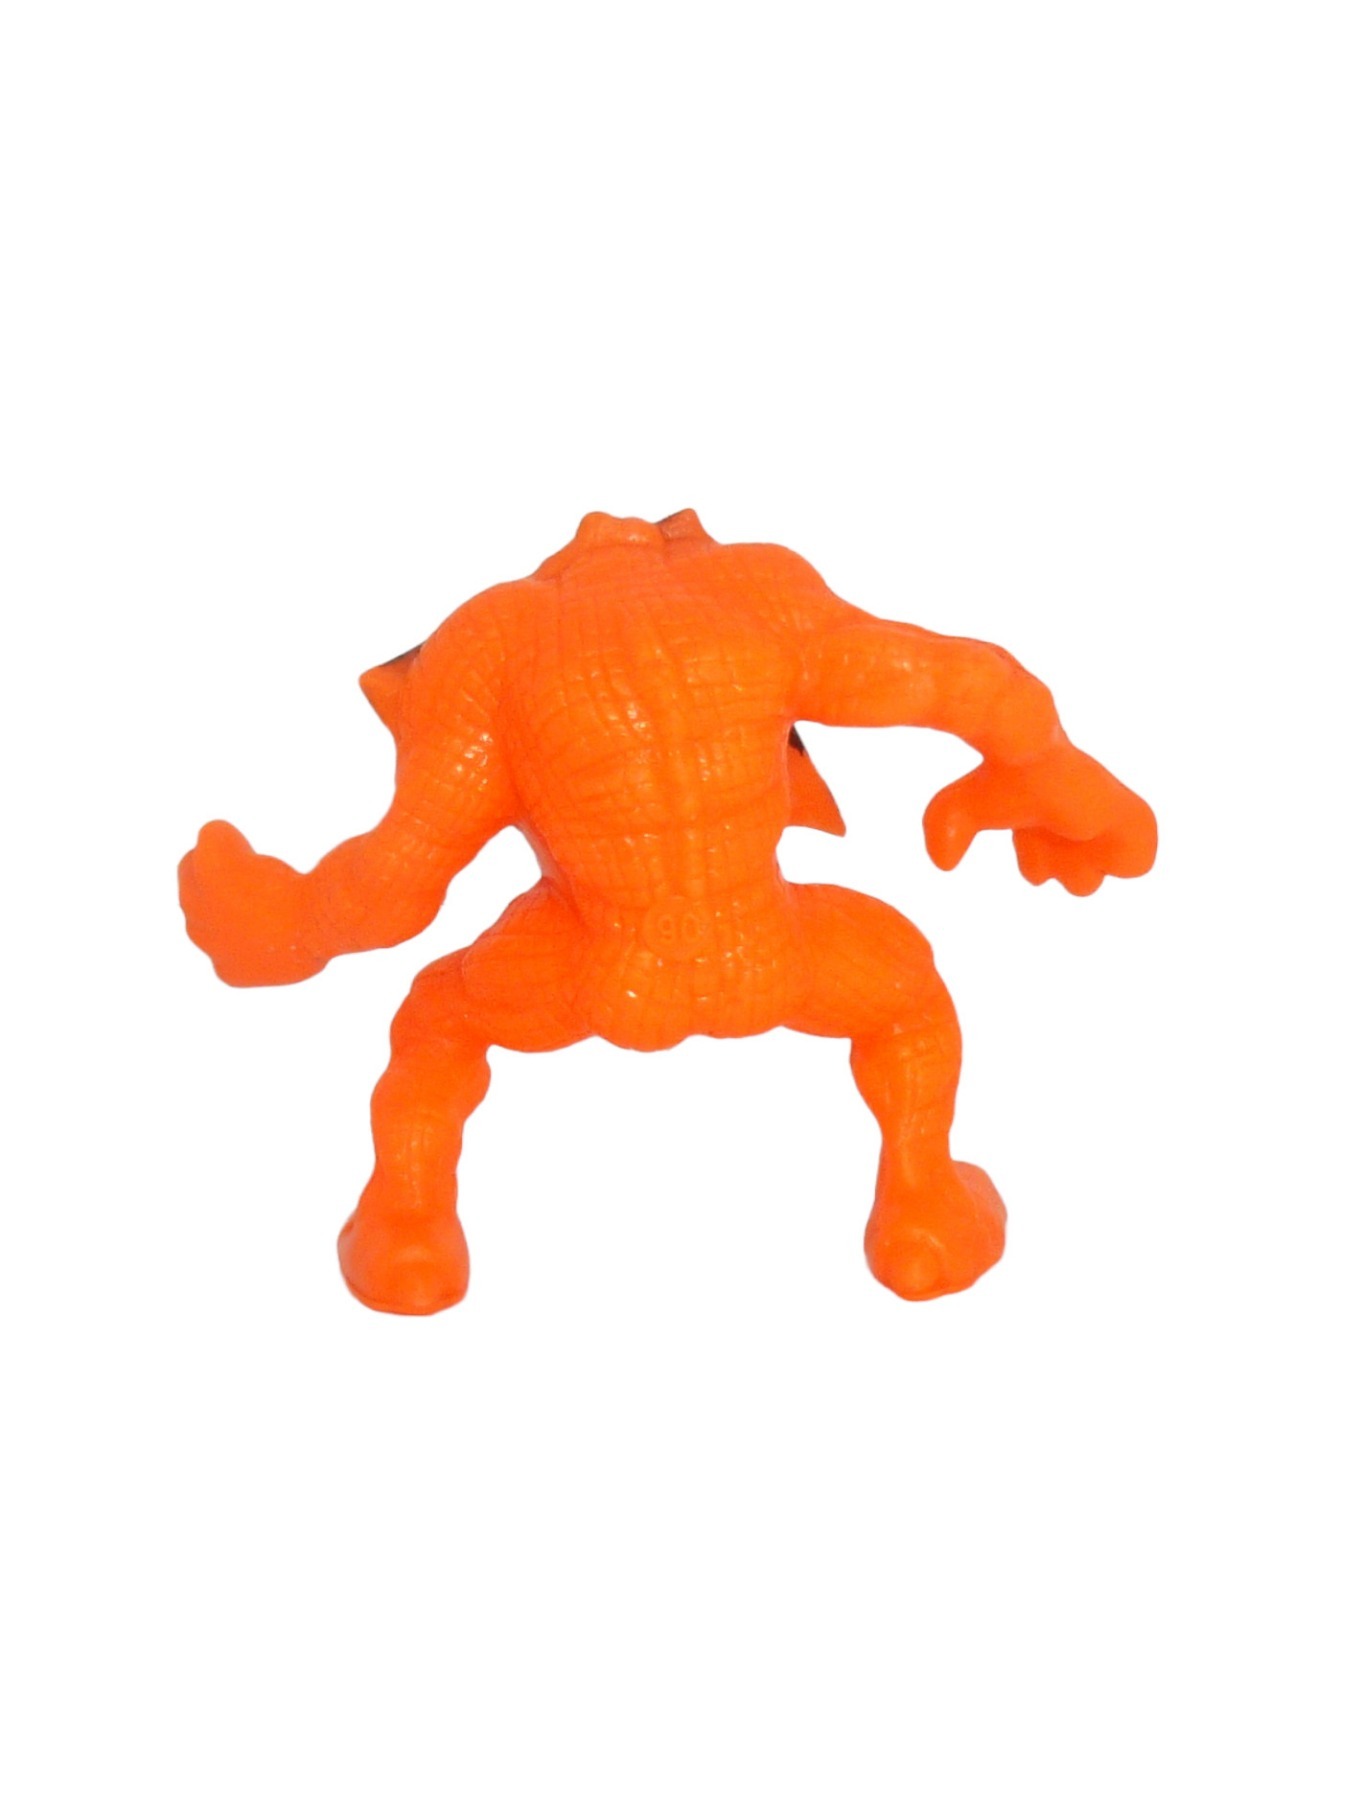 Creature from the Closet orange Nr. 106 2